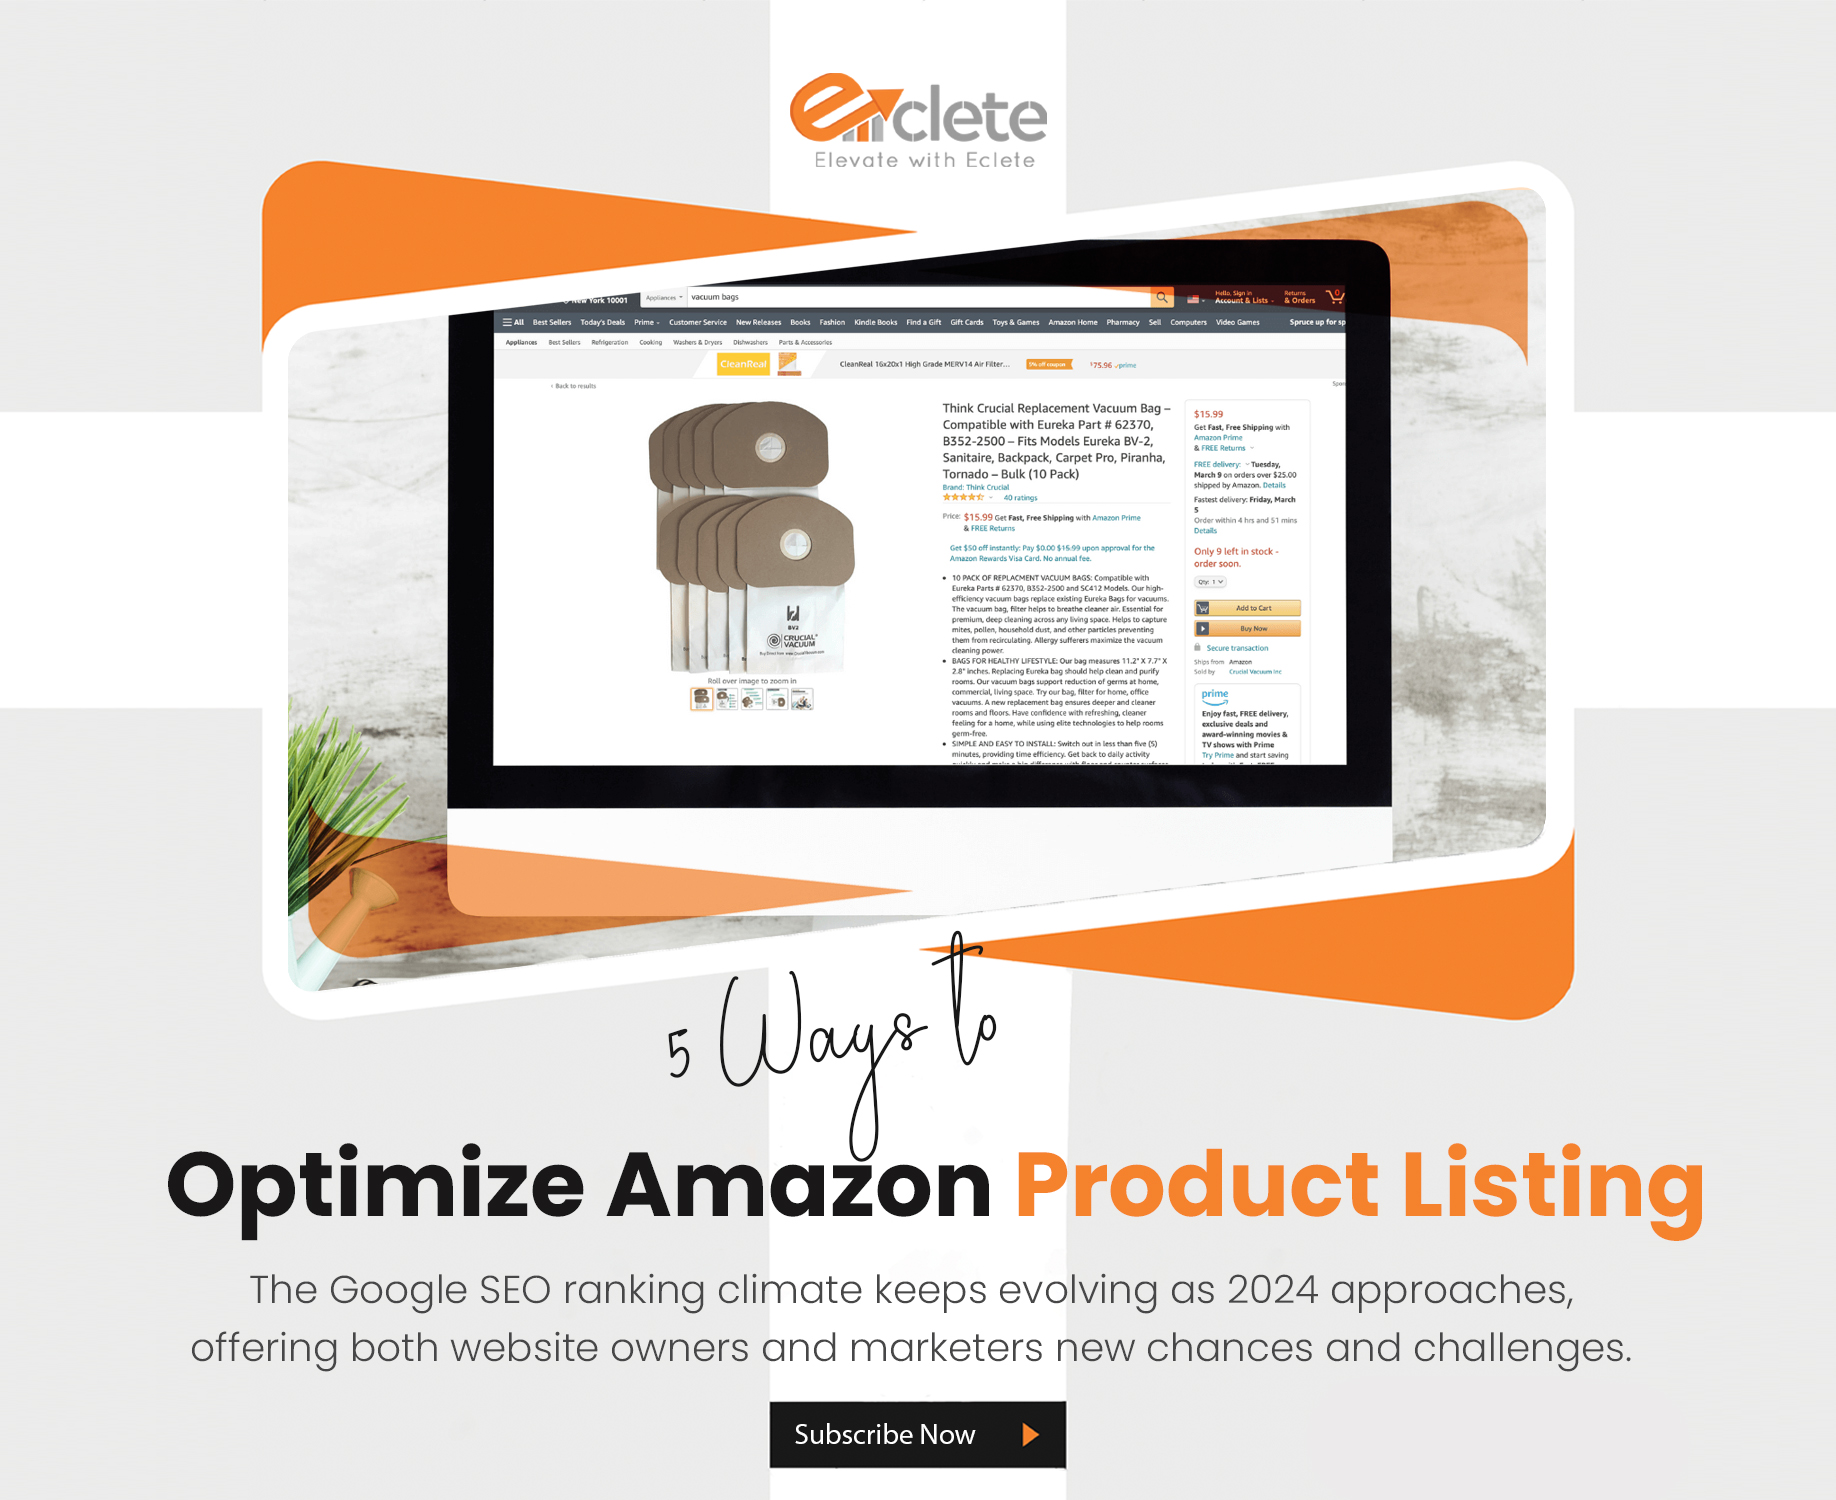 Optimize Amazon Product Listing